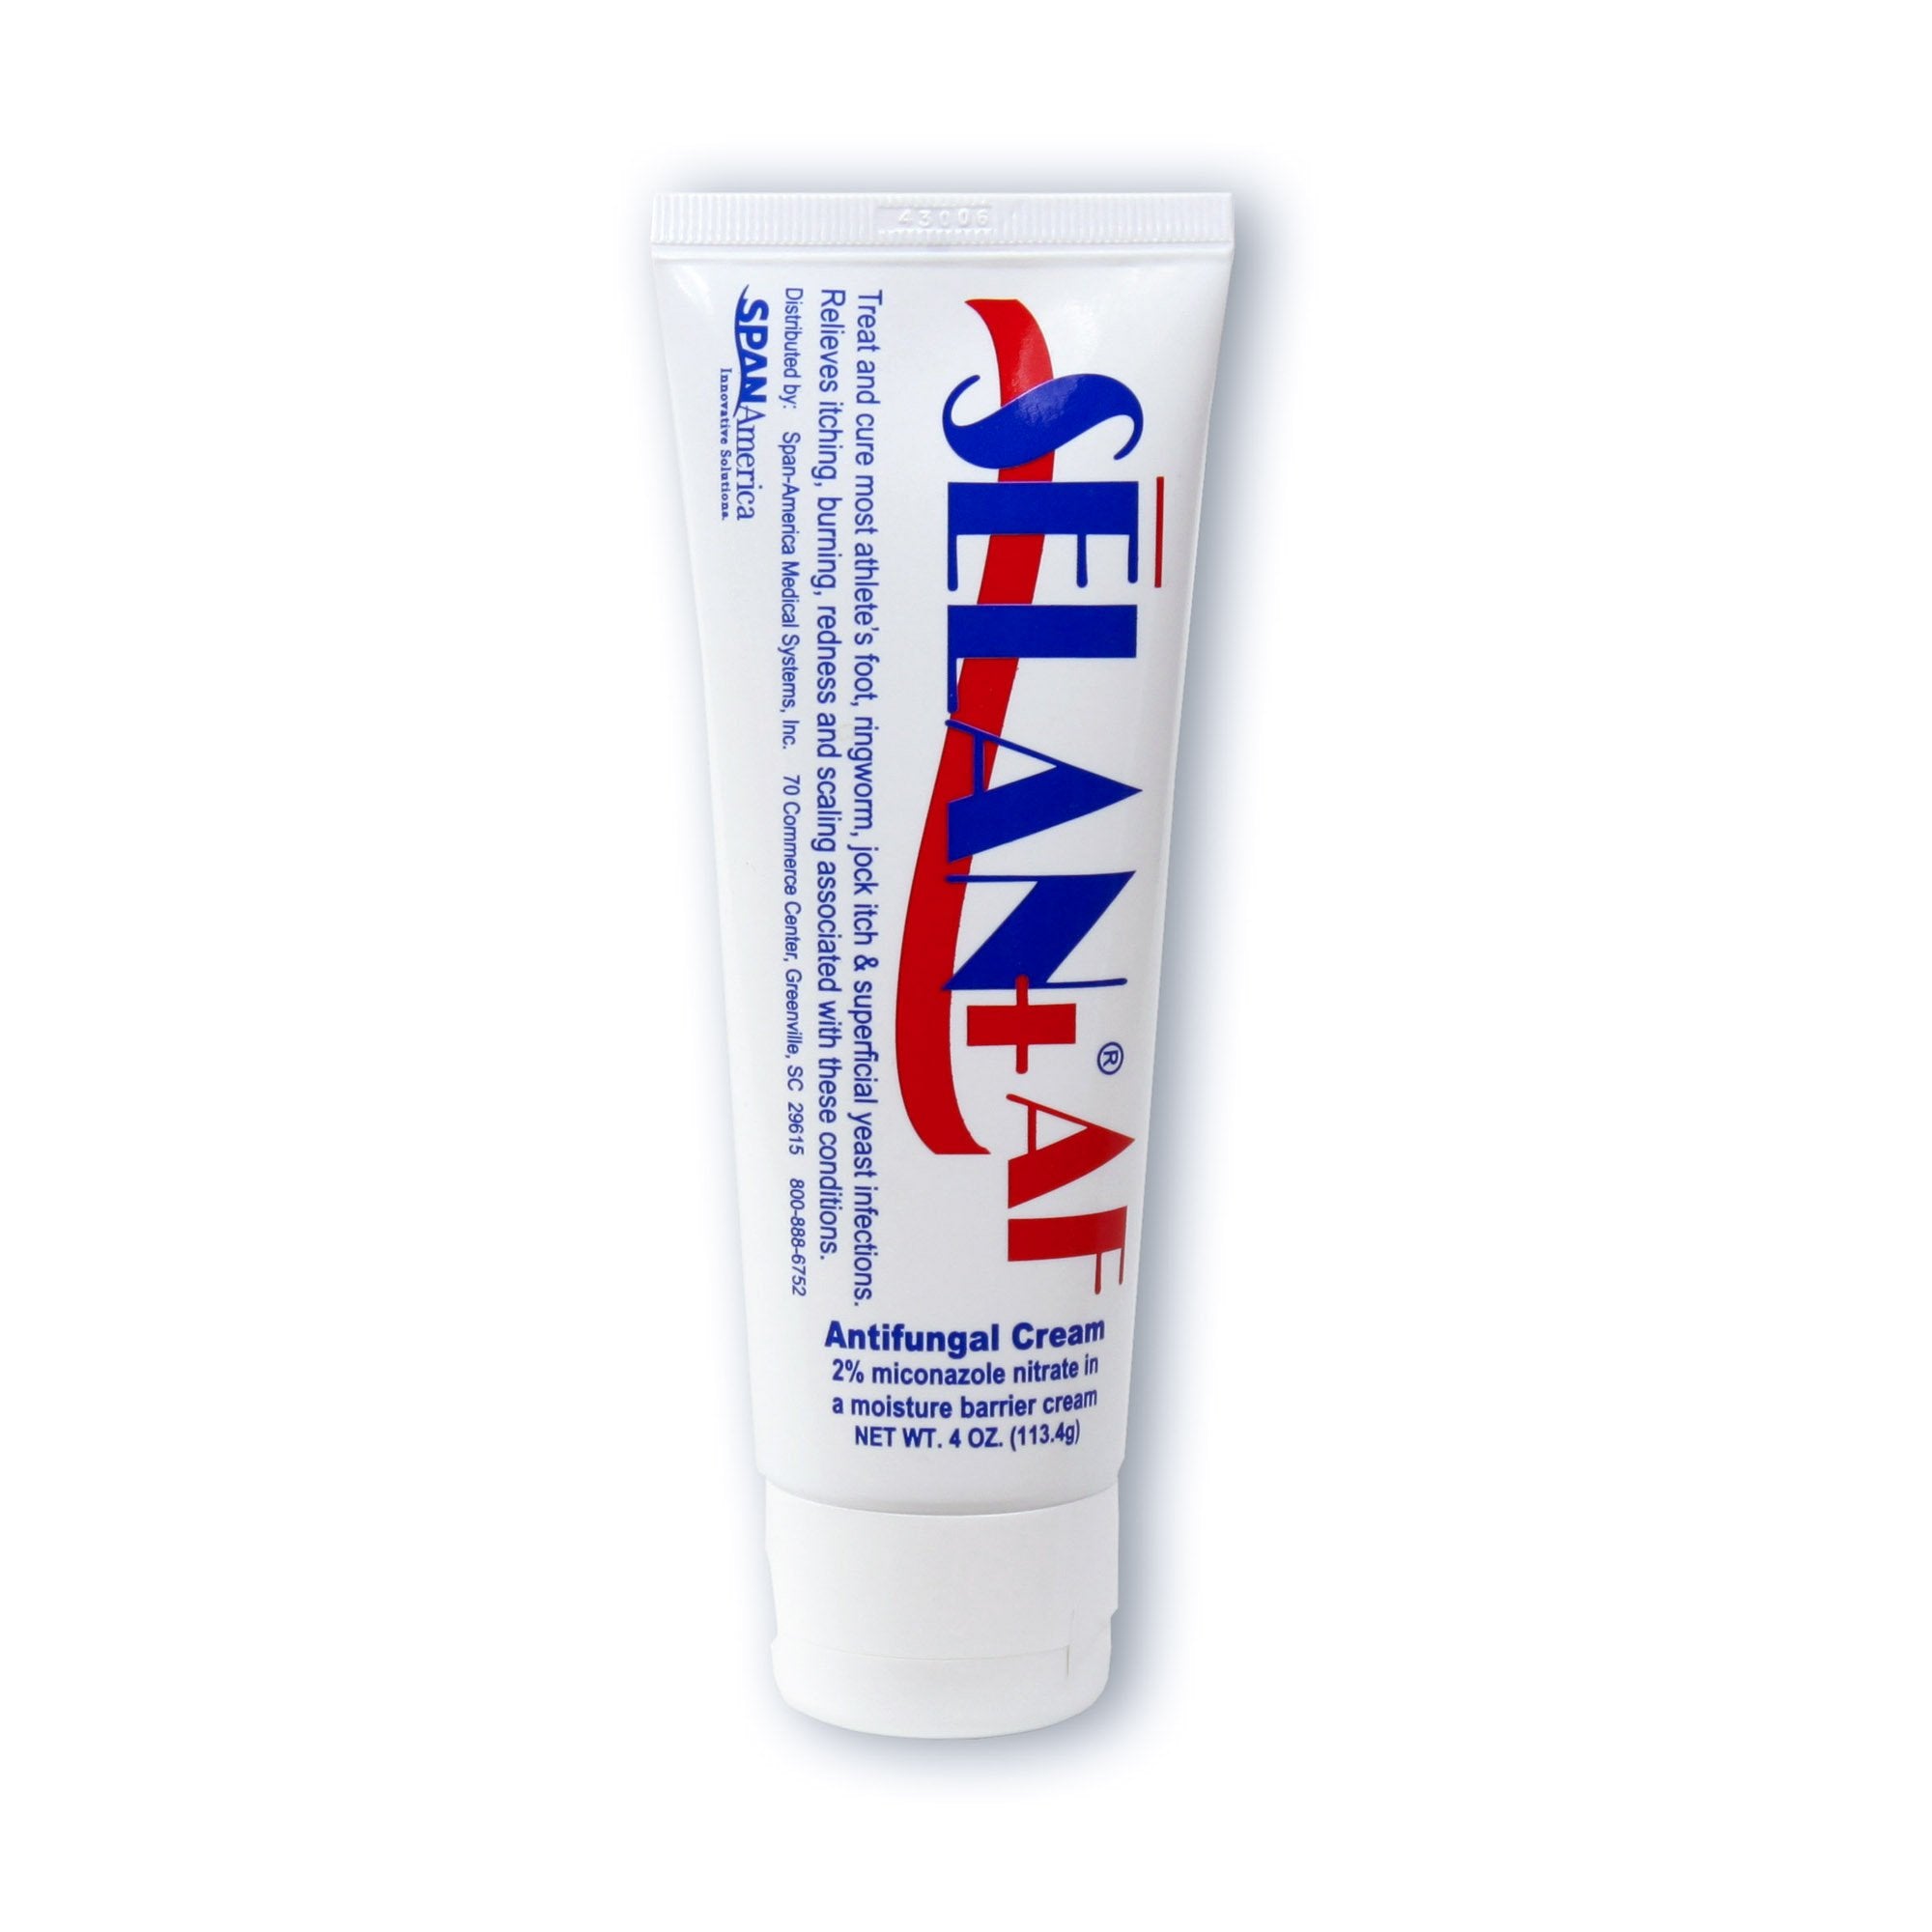 Antifungal Selan+ AF 2% Strength Cream 4 oz. Tube